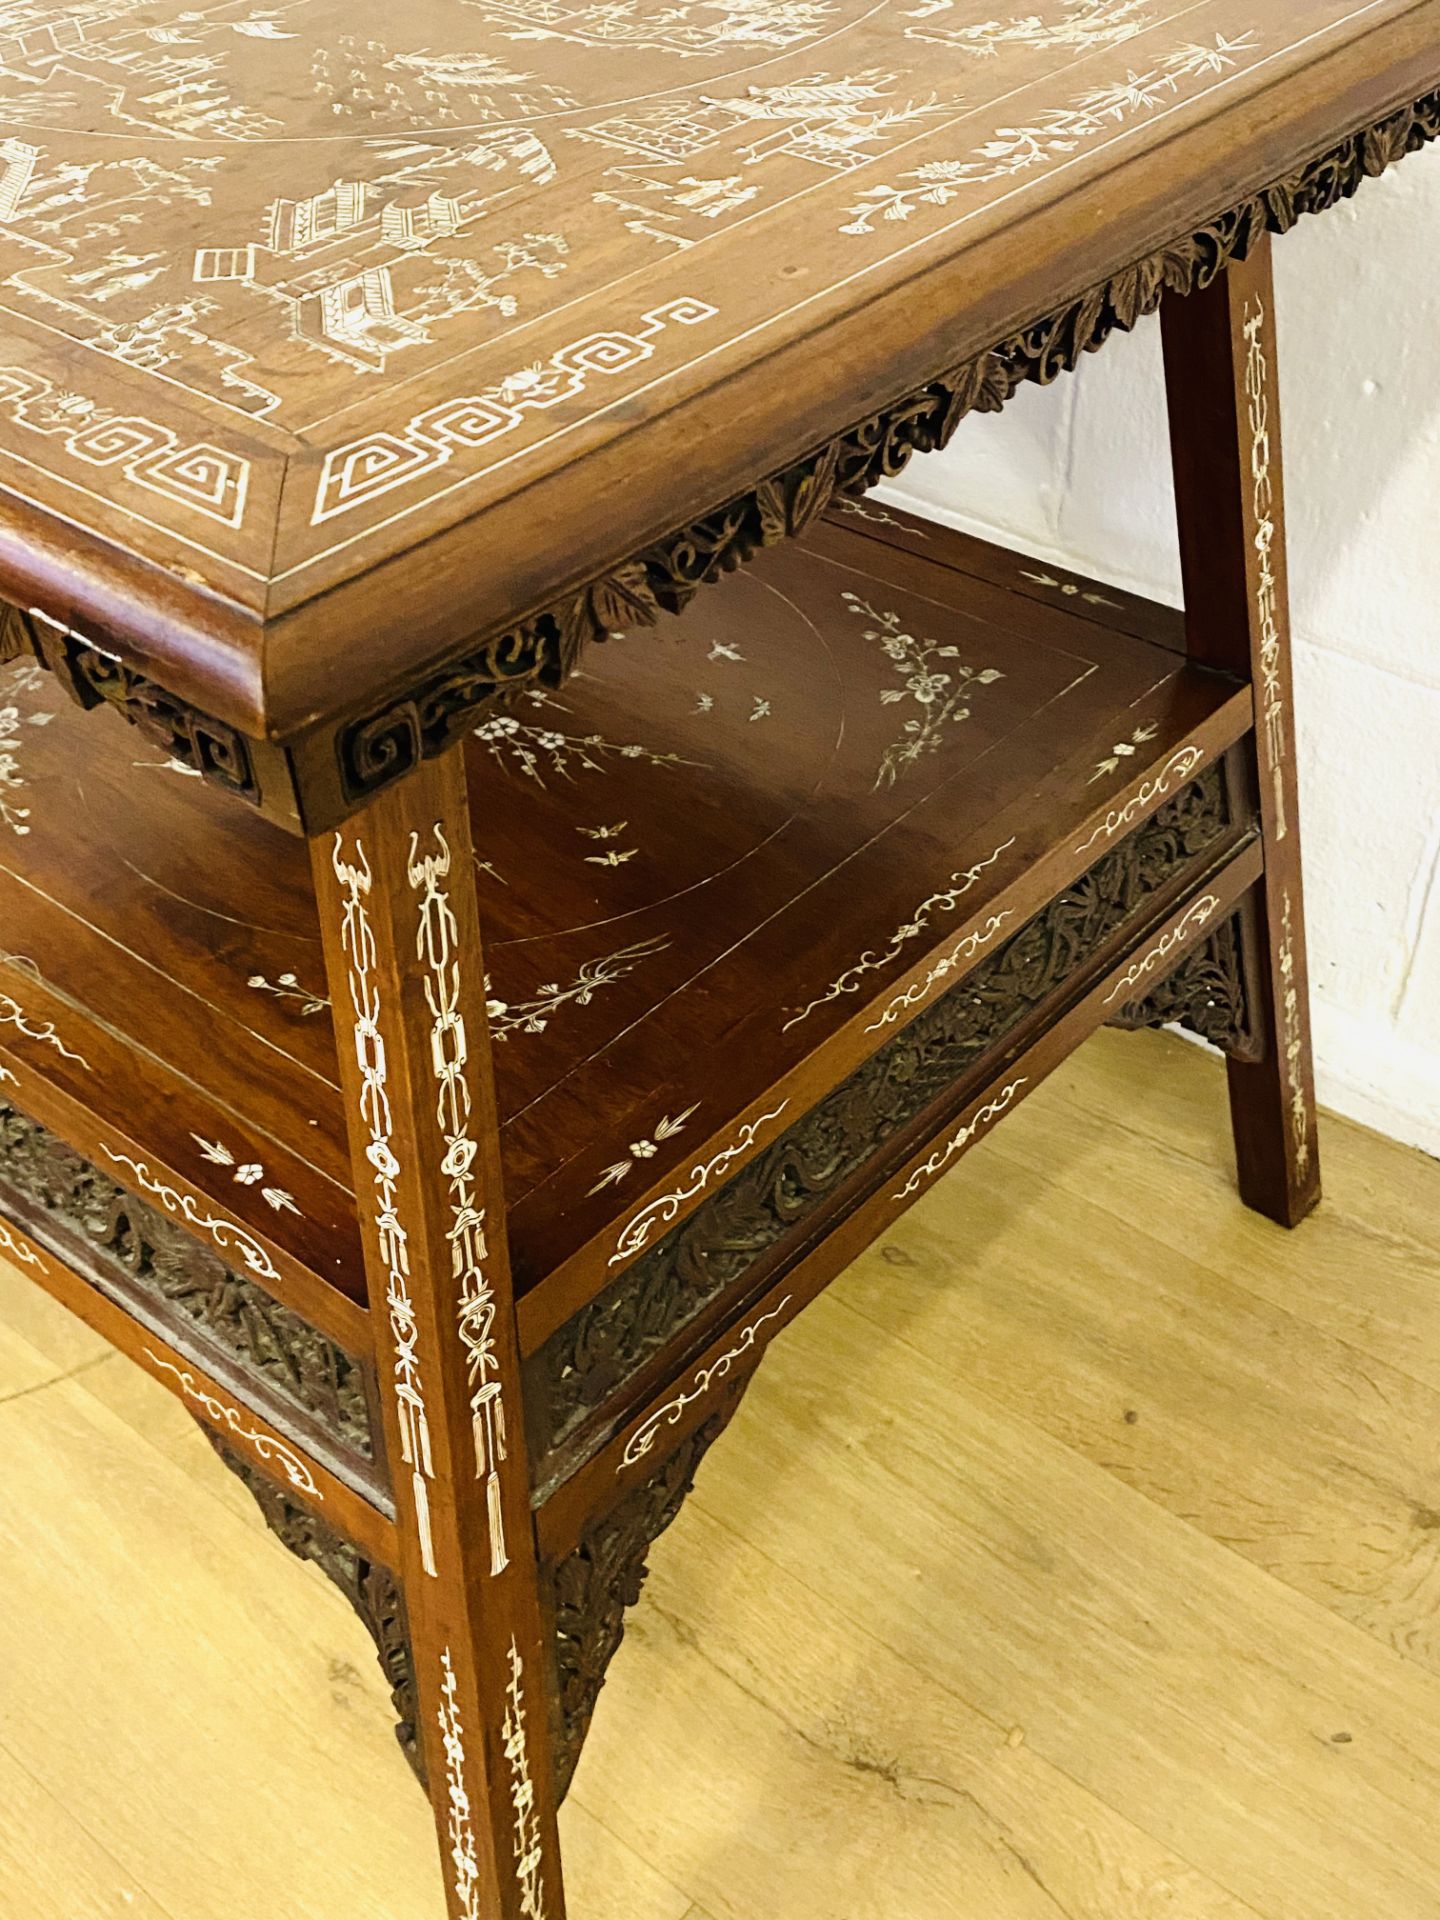 Oriental hardwood inlaid display table - Image 4 of 8